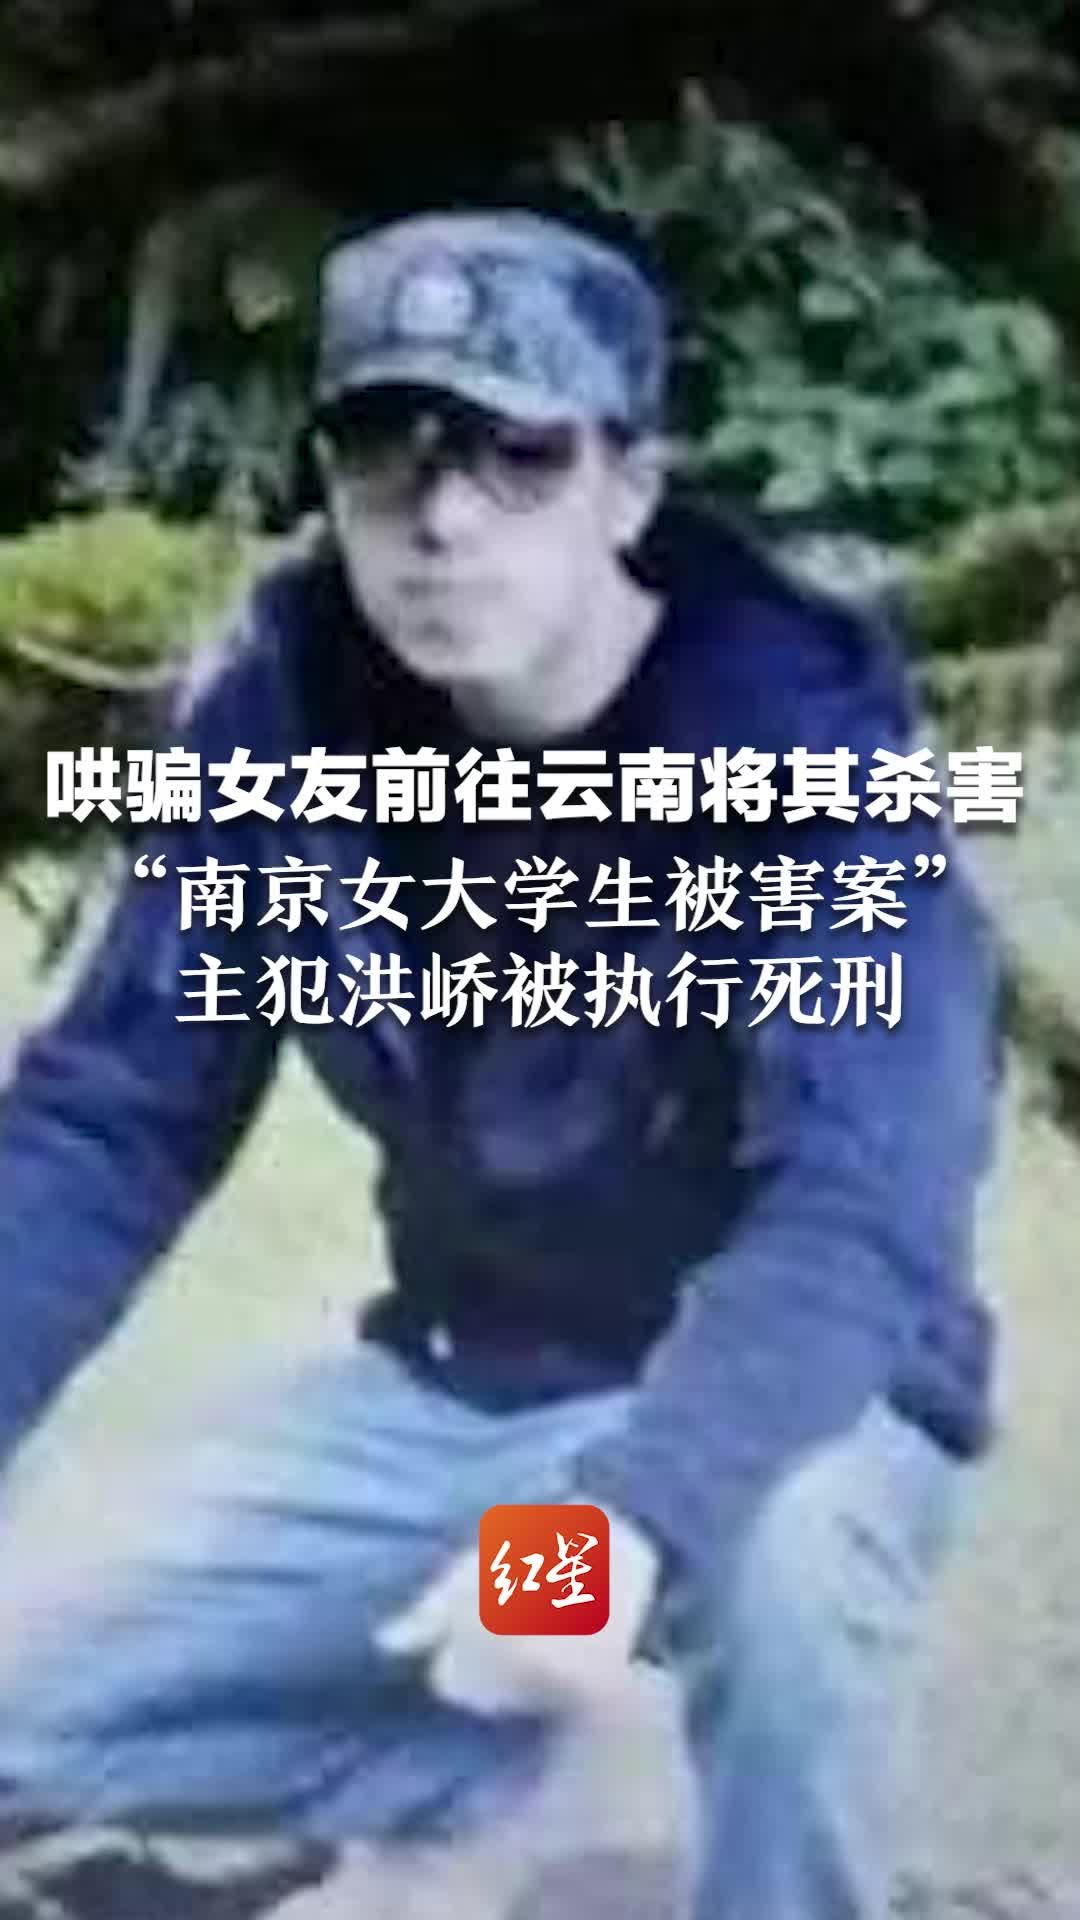 警察夫妇遭歹徒伏击 女警开枪反杀 歹徒丢下被击毙同伙逃离_凤凰网资讯_凤凰网